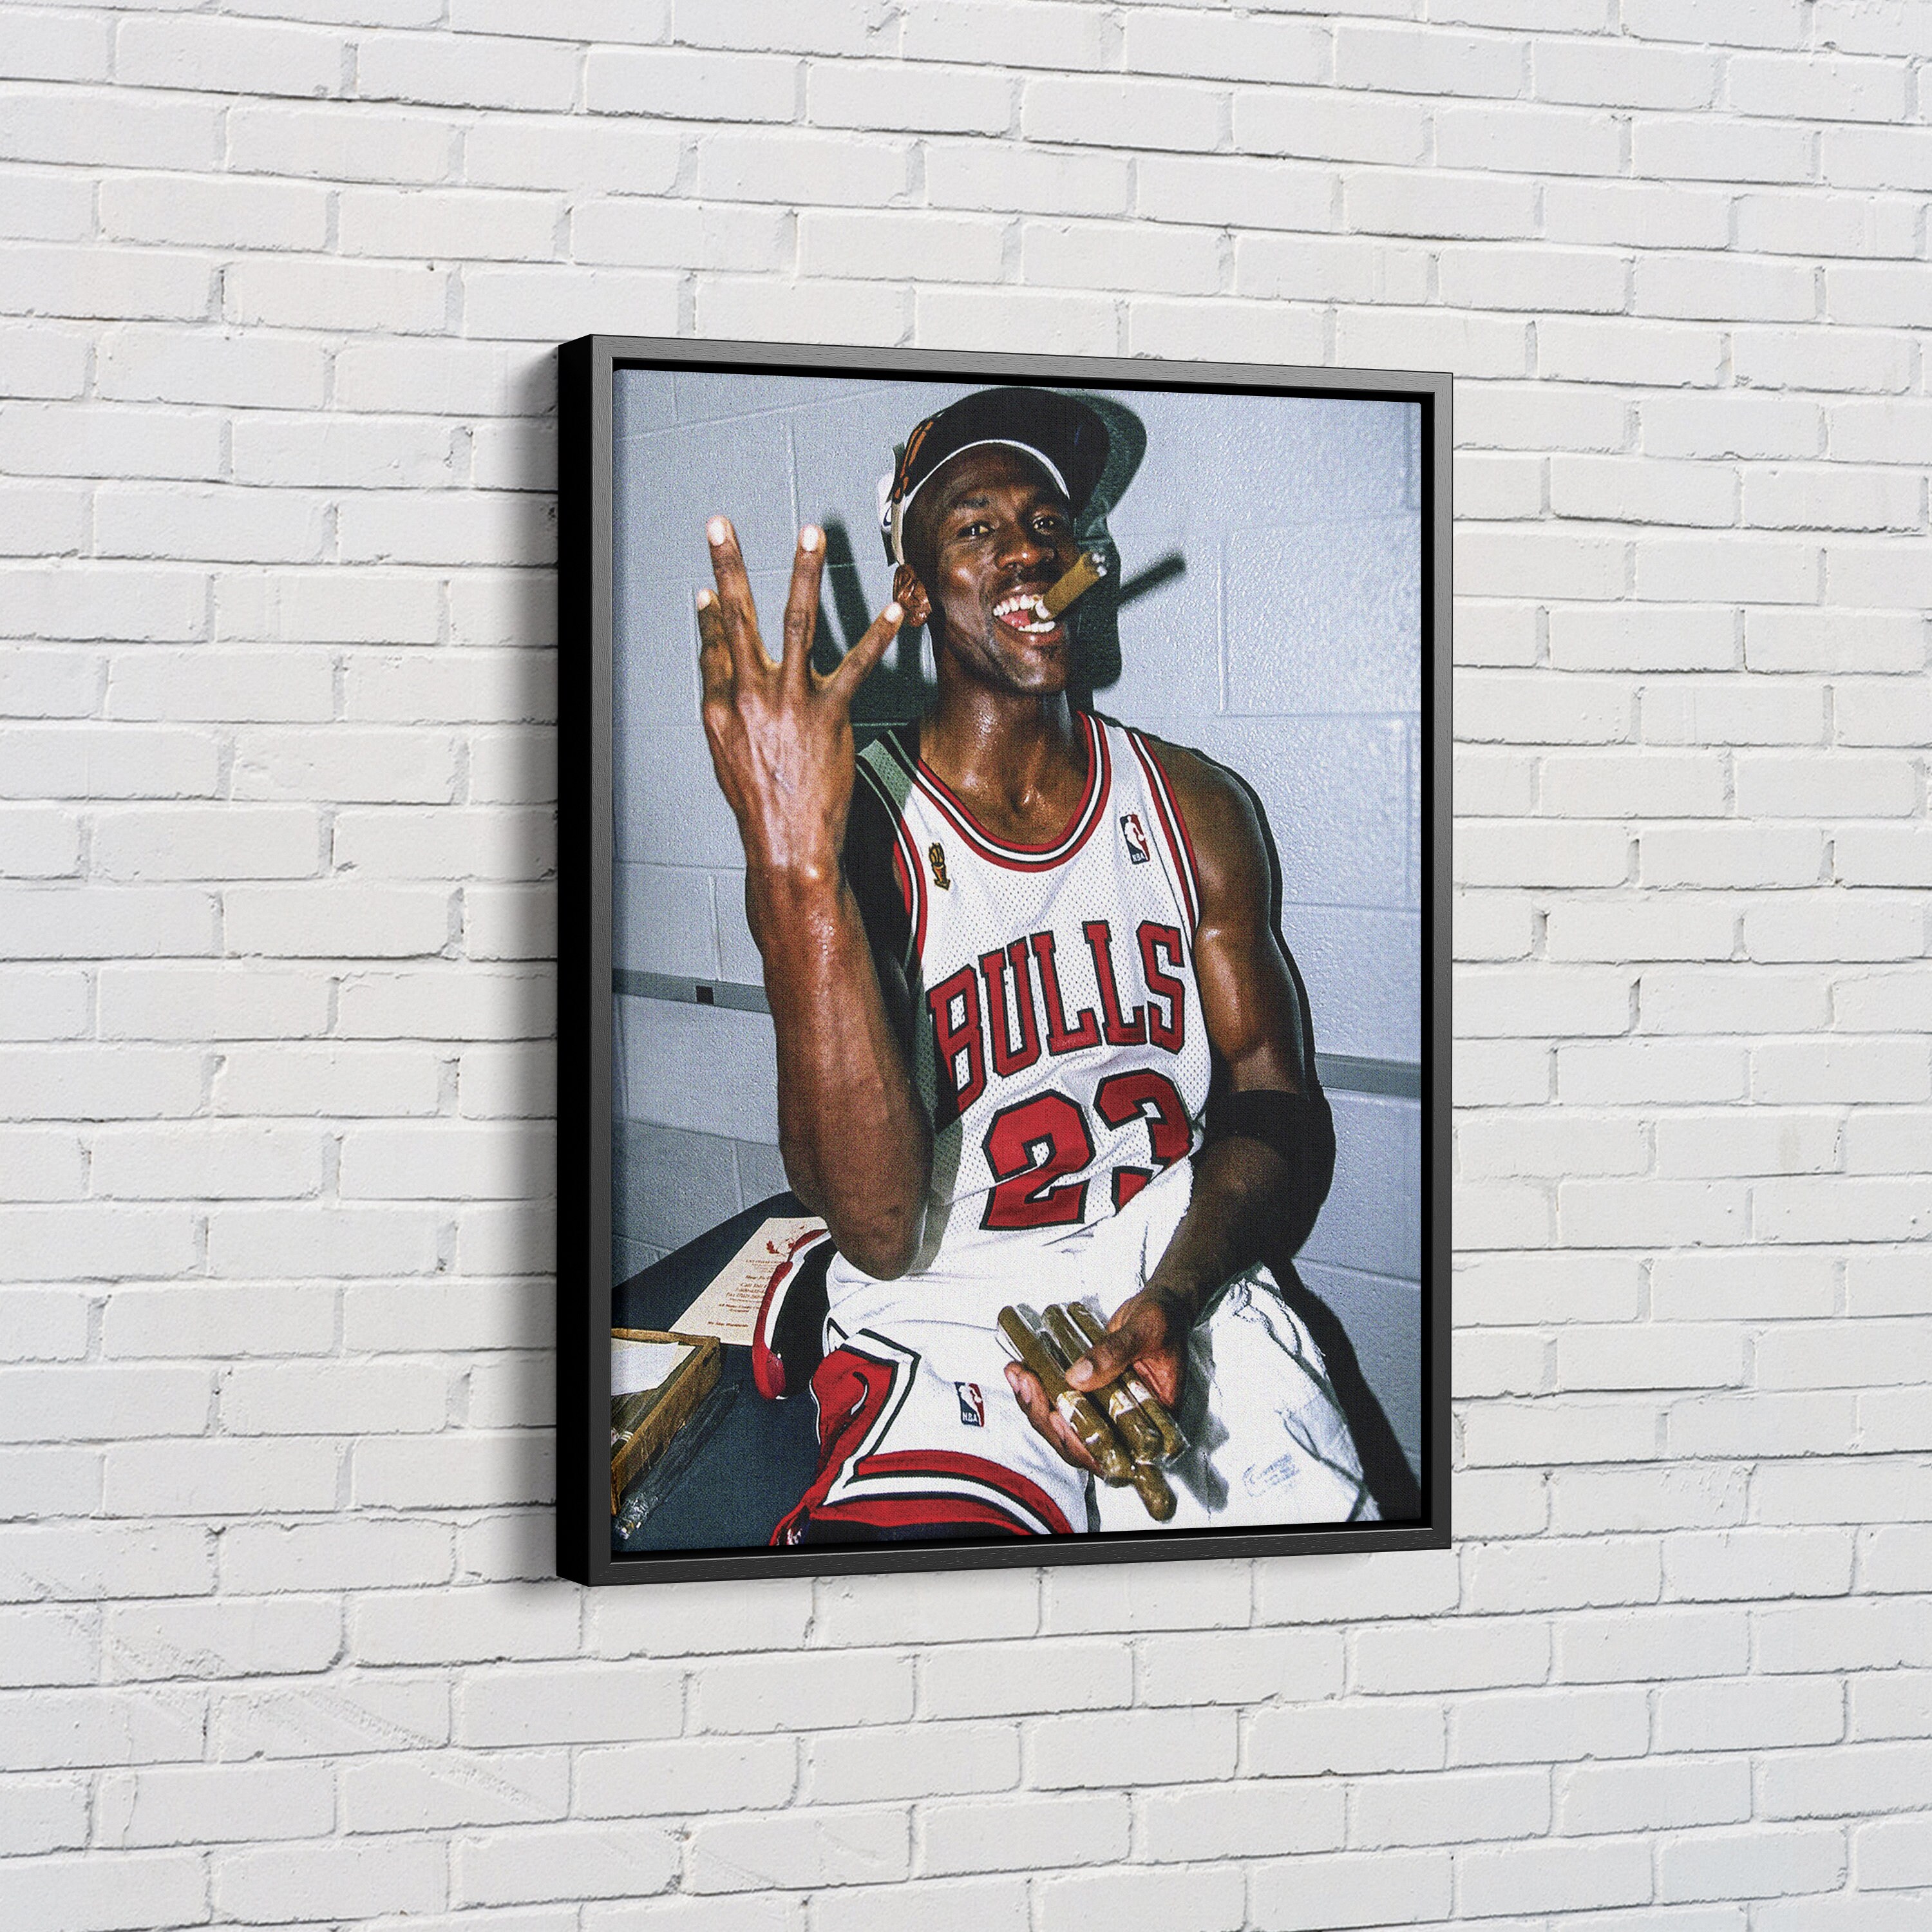 Michael Jordan Poster Basketball Smoking Canvas Wall Art Home Decor Framed Art